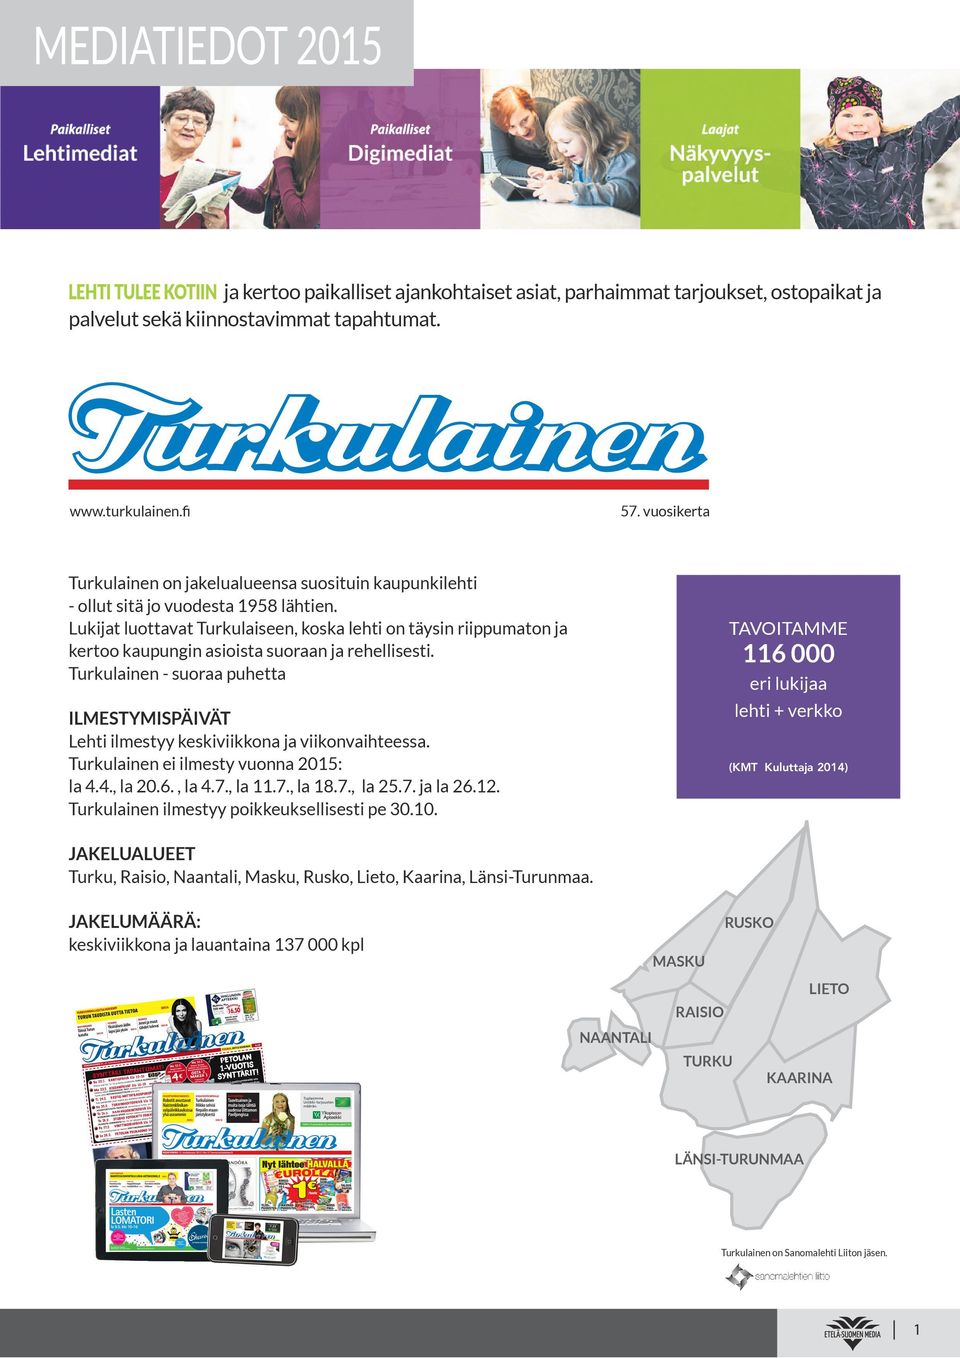 Lukijat luottavat Turkulaiseen, koska lehti on täysin riippumaton ja kertoo kaupungin asioista suoraan ja rehellisesti.